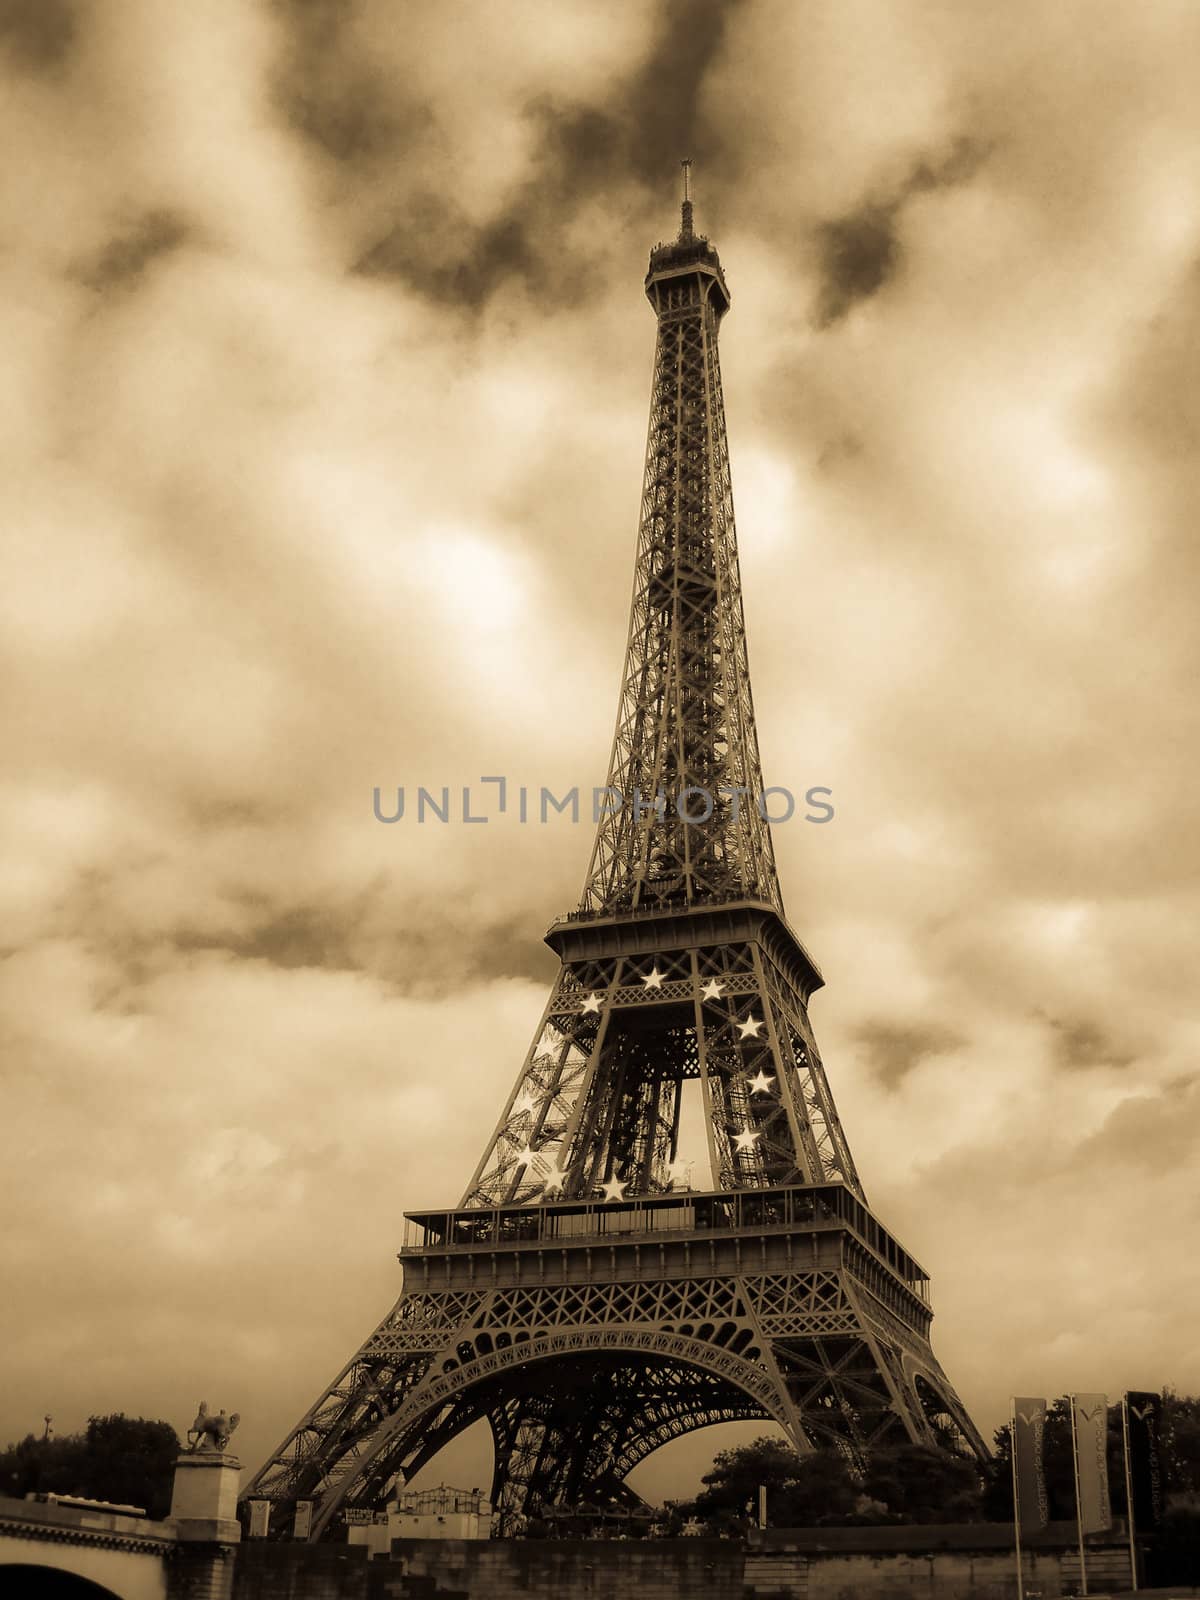 Eiffel Tower by chaosmediamgt